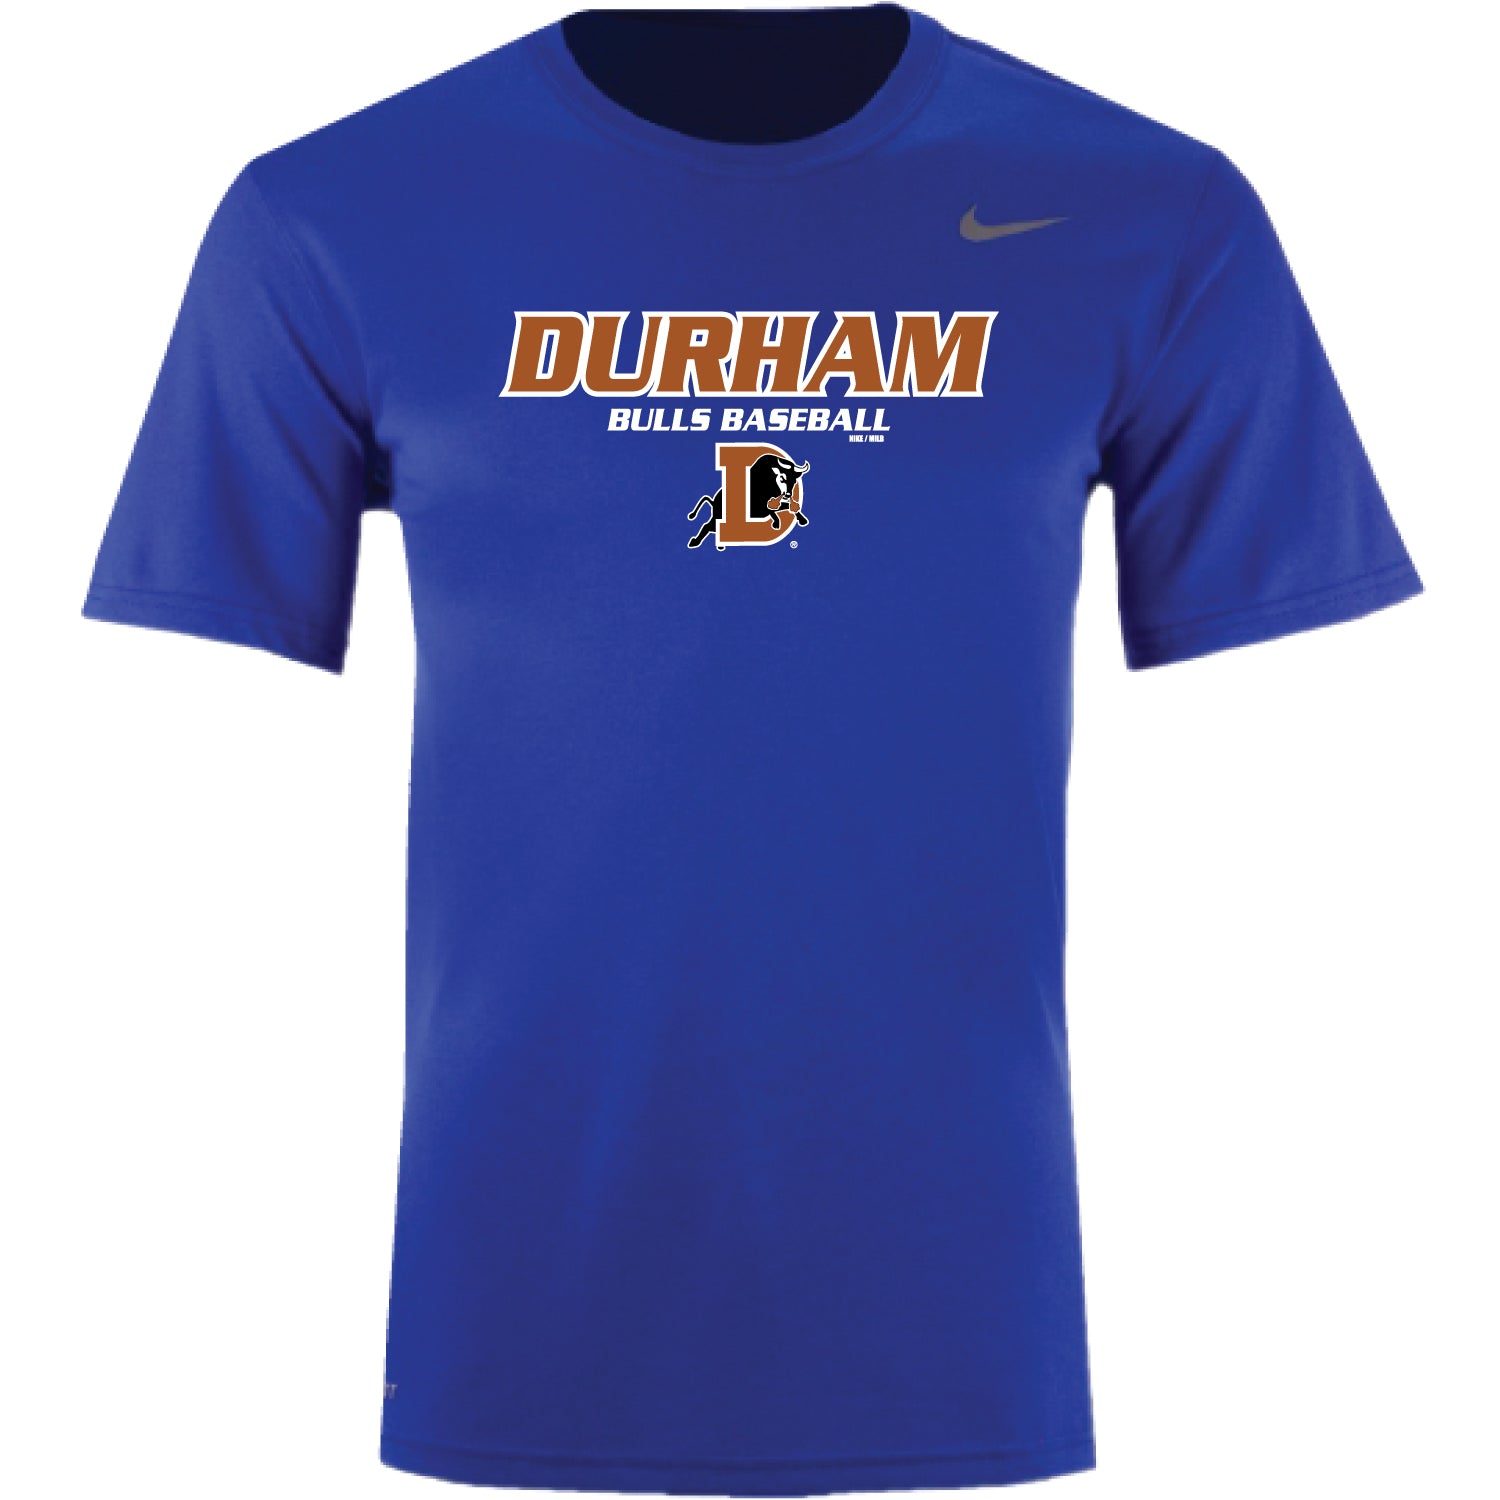 Durham Bulls Official Store